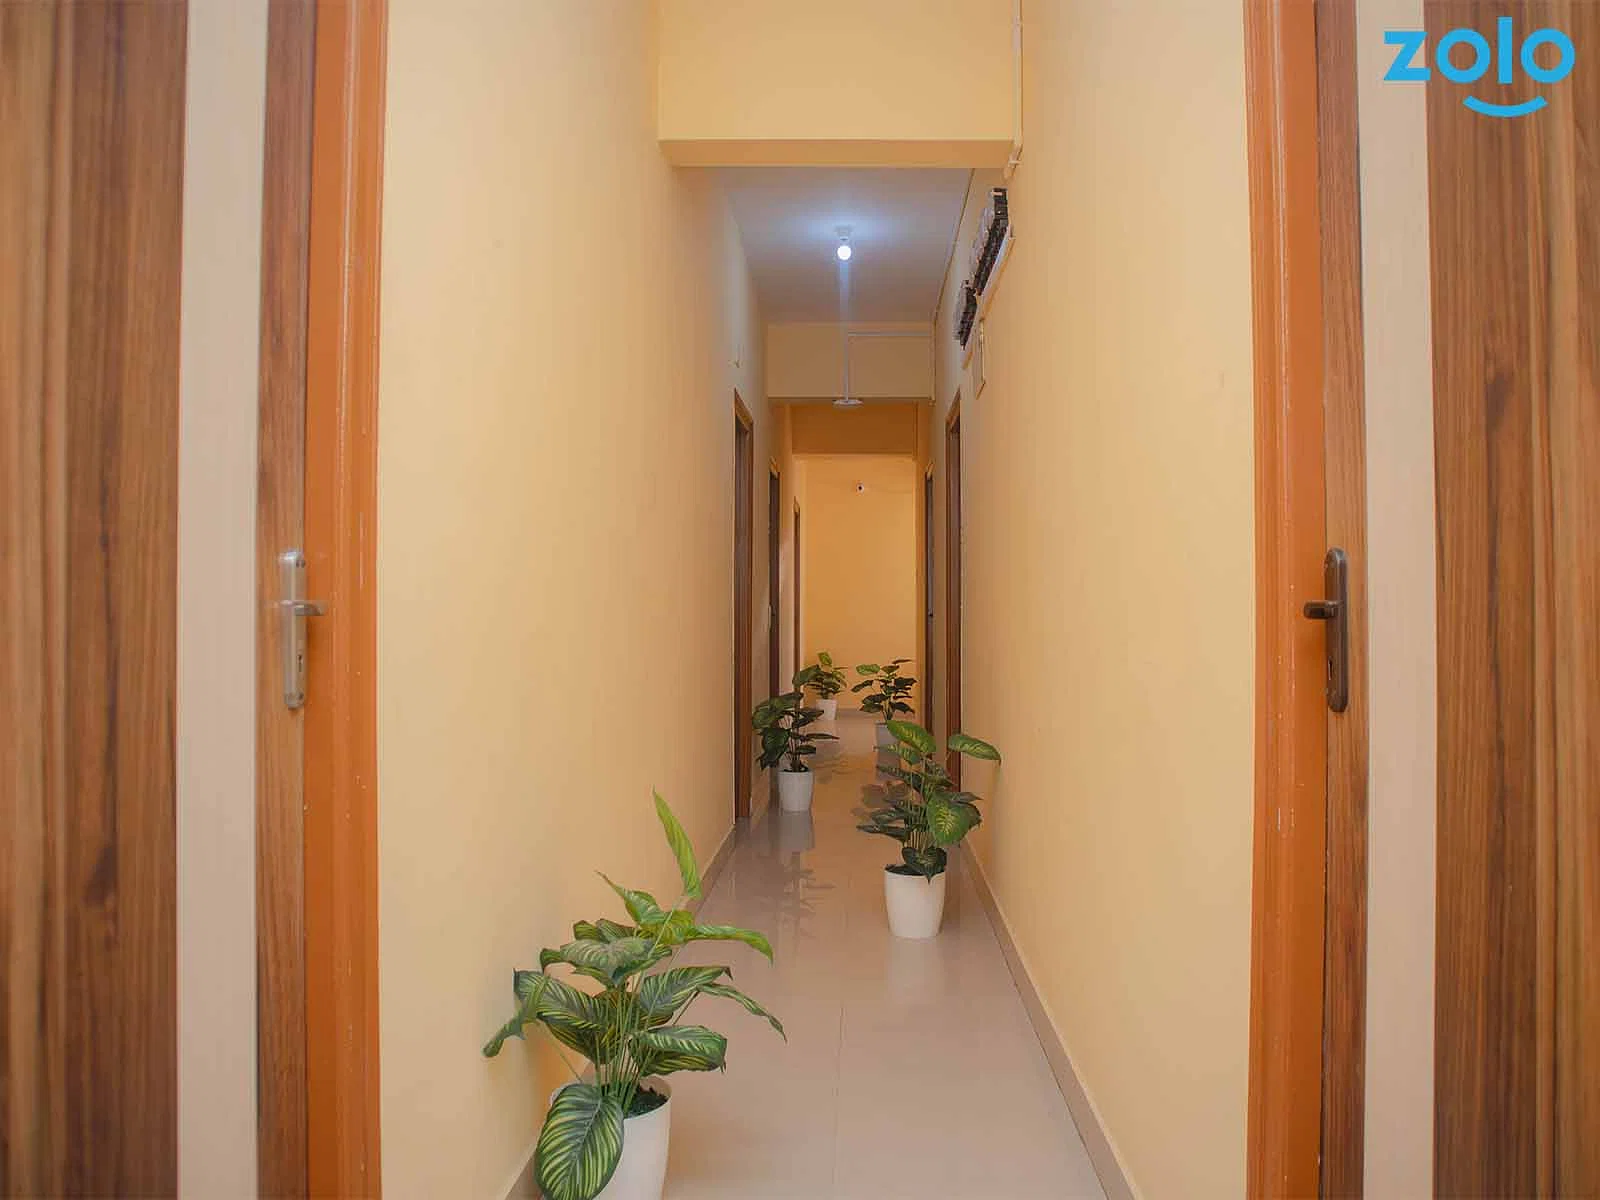 luxury PG accommodations with modern Wi-Fi, AC, and TV in Manyata-Bangalore-Zolo Zenn